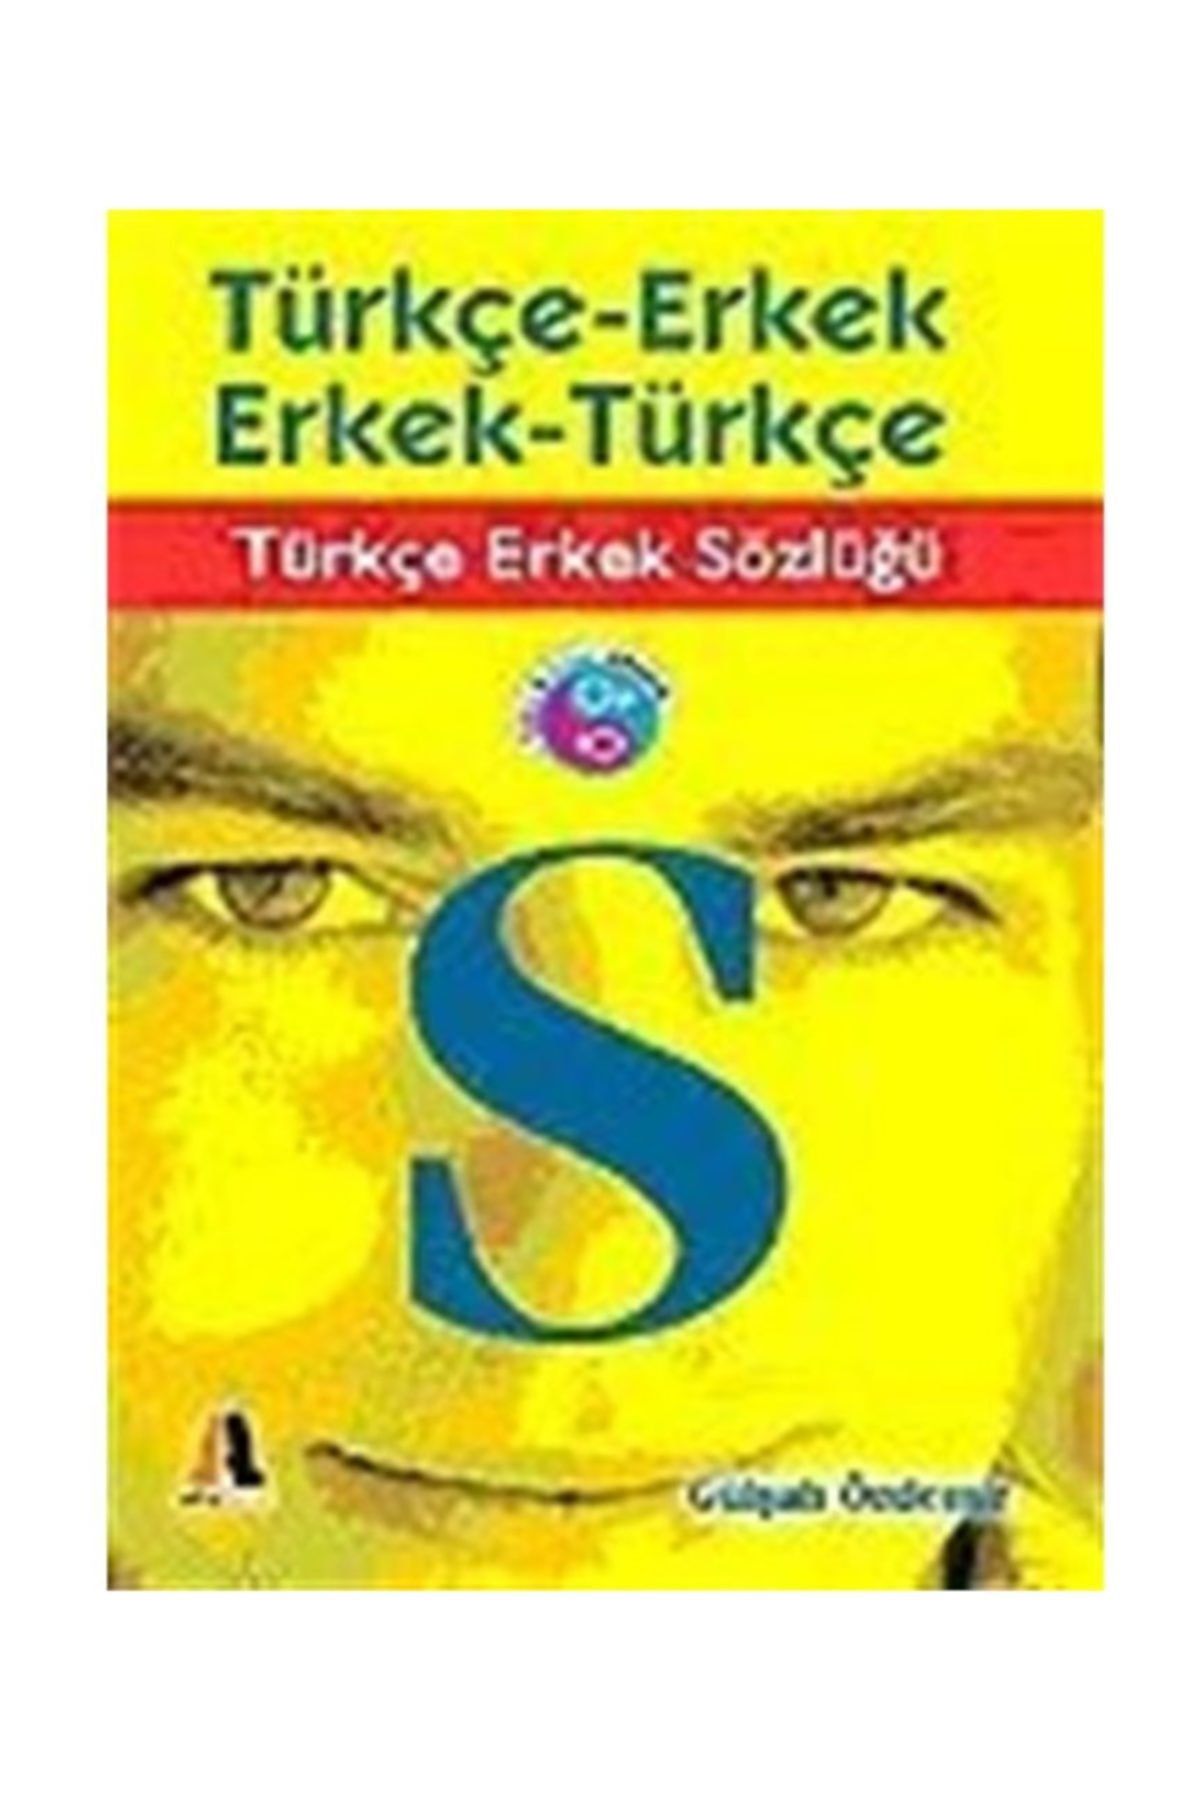 Akis Kitap Türkçe Erkek Sözlüğü / Türkçe-erkek / Erkek-türkçe